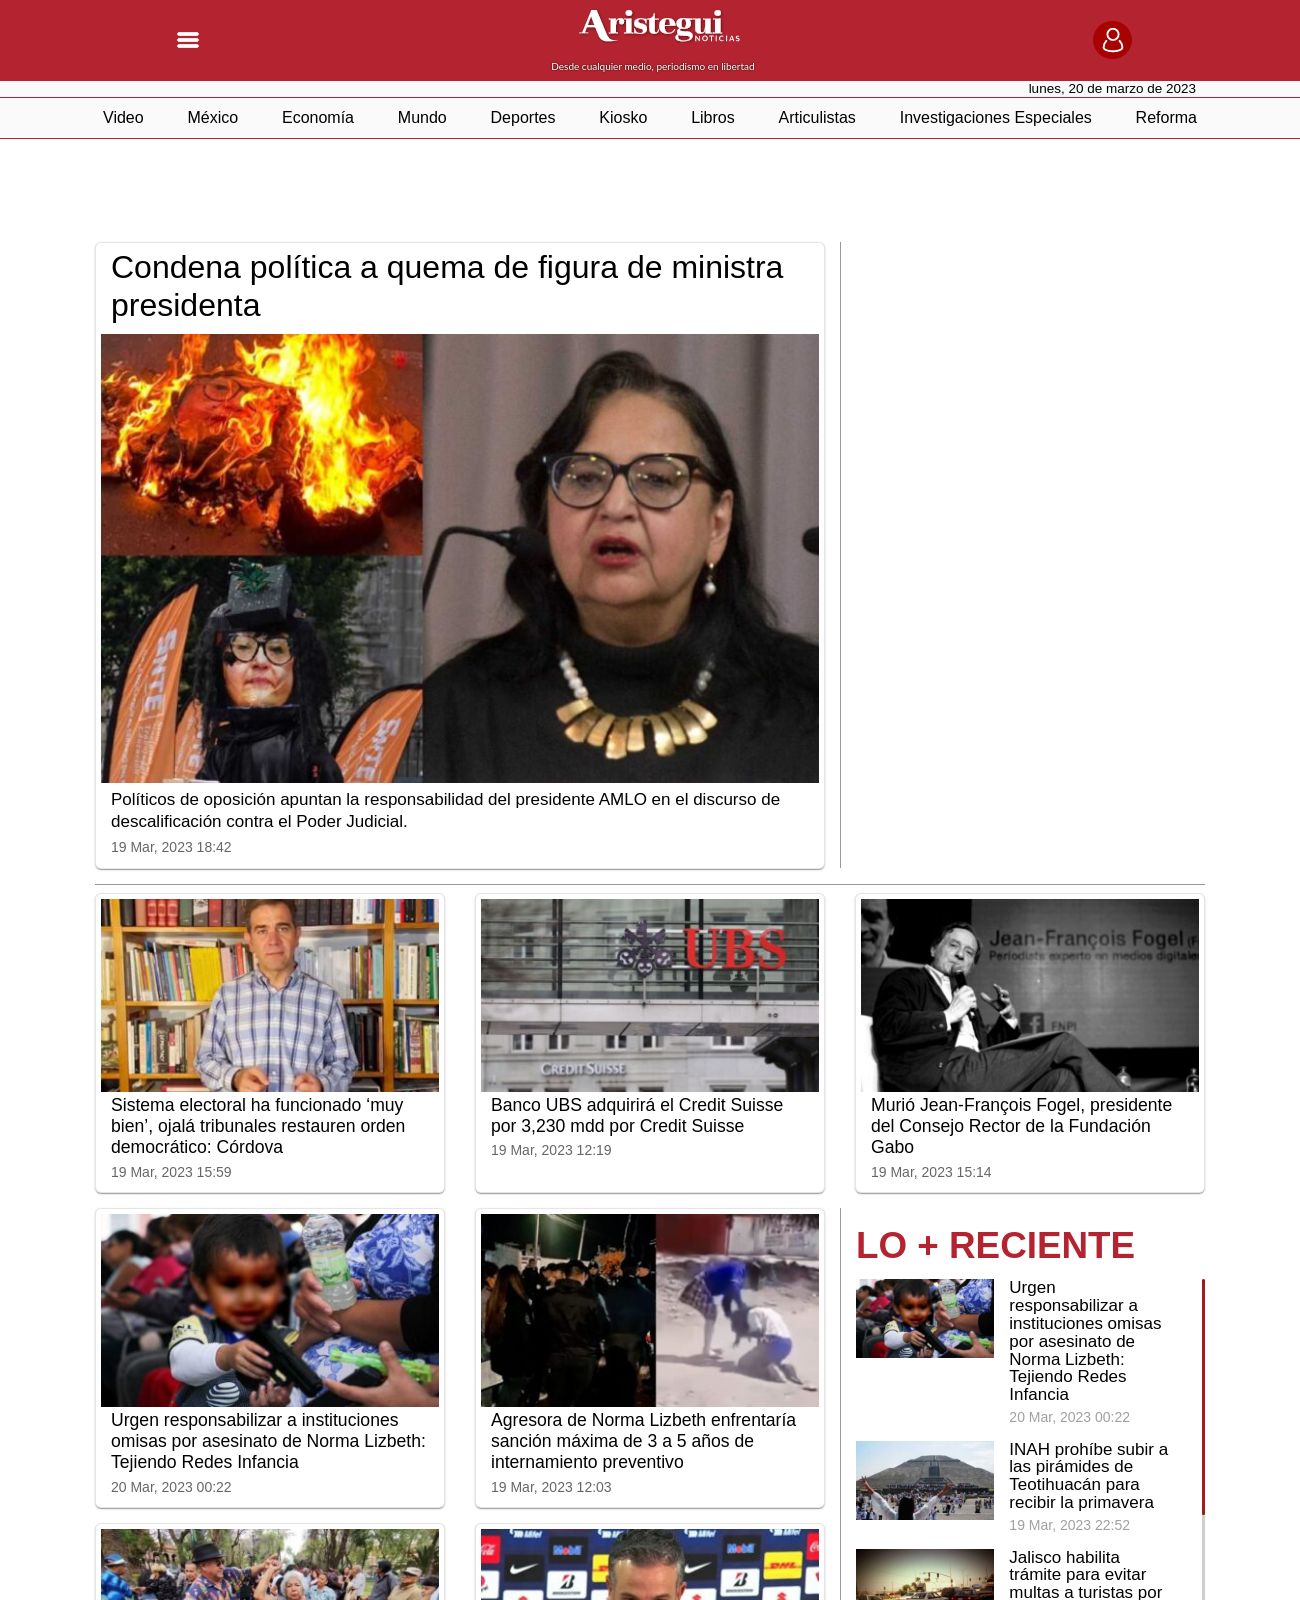 Aristegui Noticias at 2023-03-20 04:14:47-06:00 local time